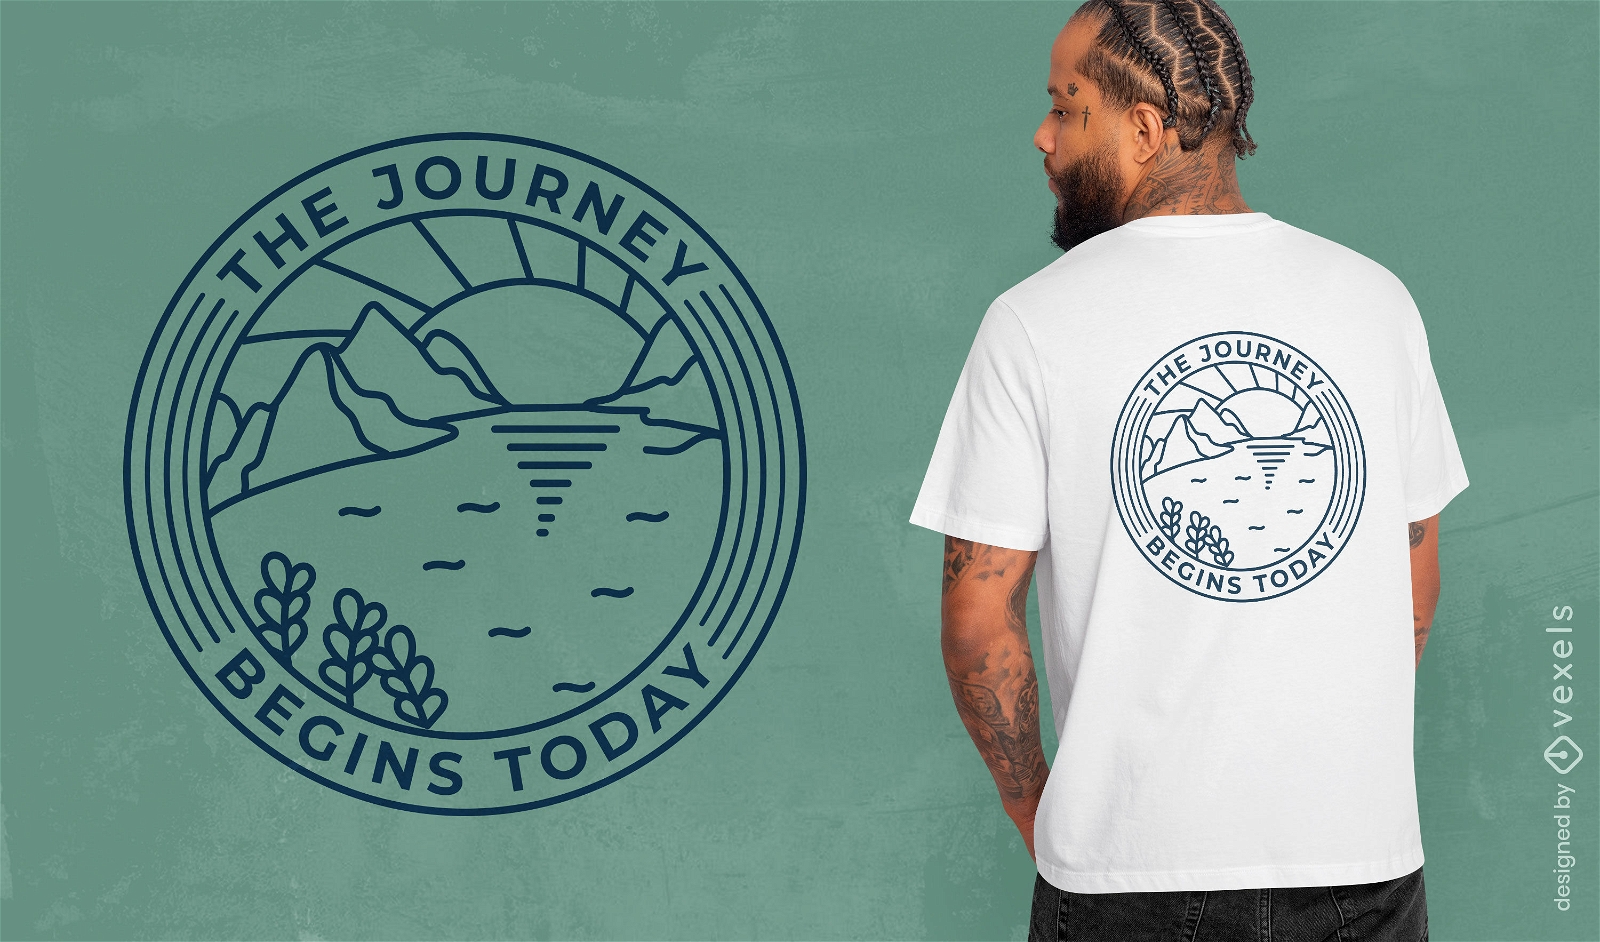 A jornada come?a com design de camisetas